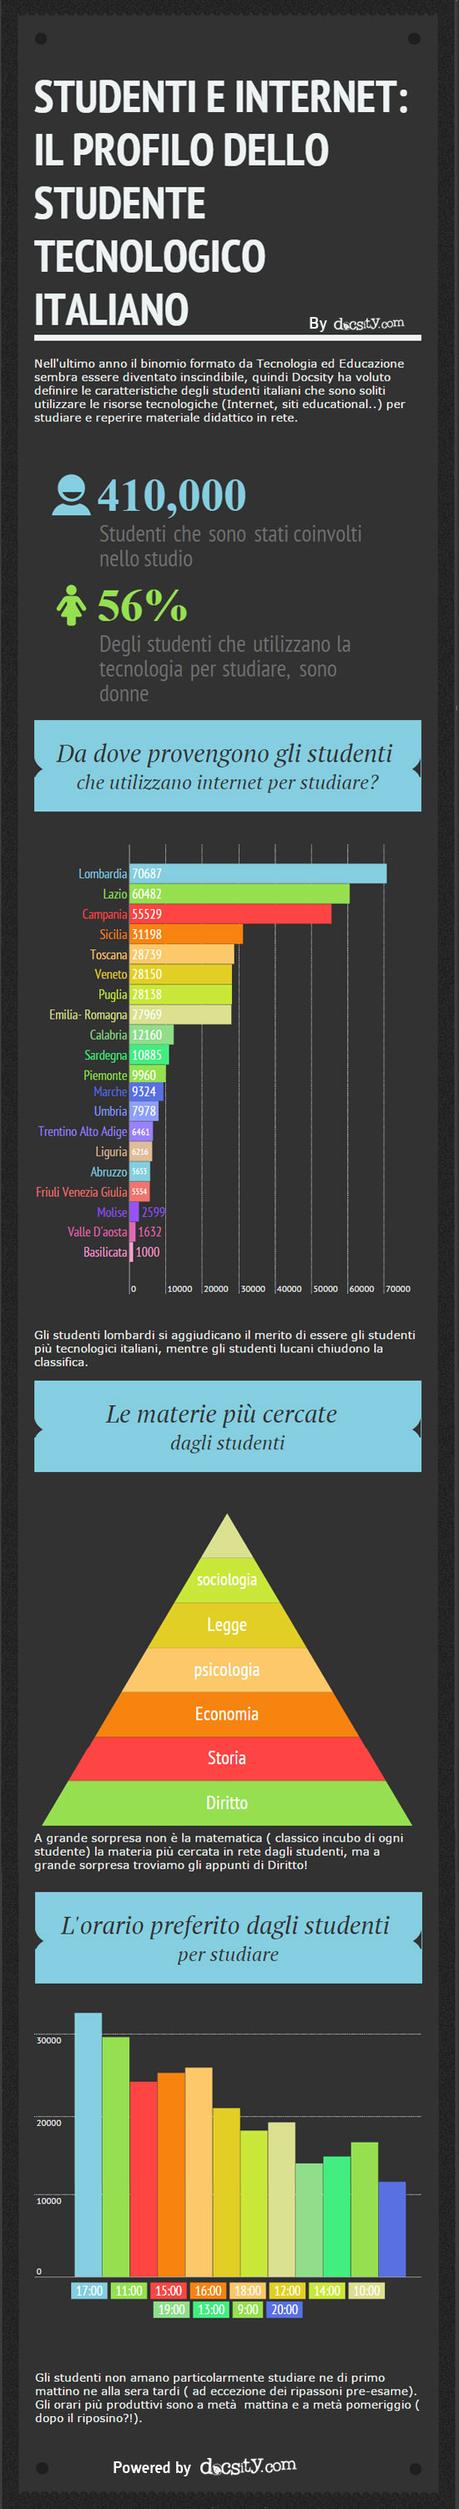 Ecco il profilo digitale dello studente italiano [Infografica]